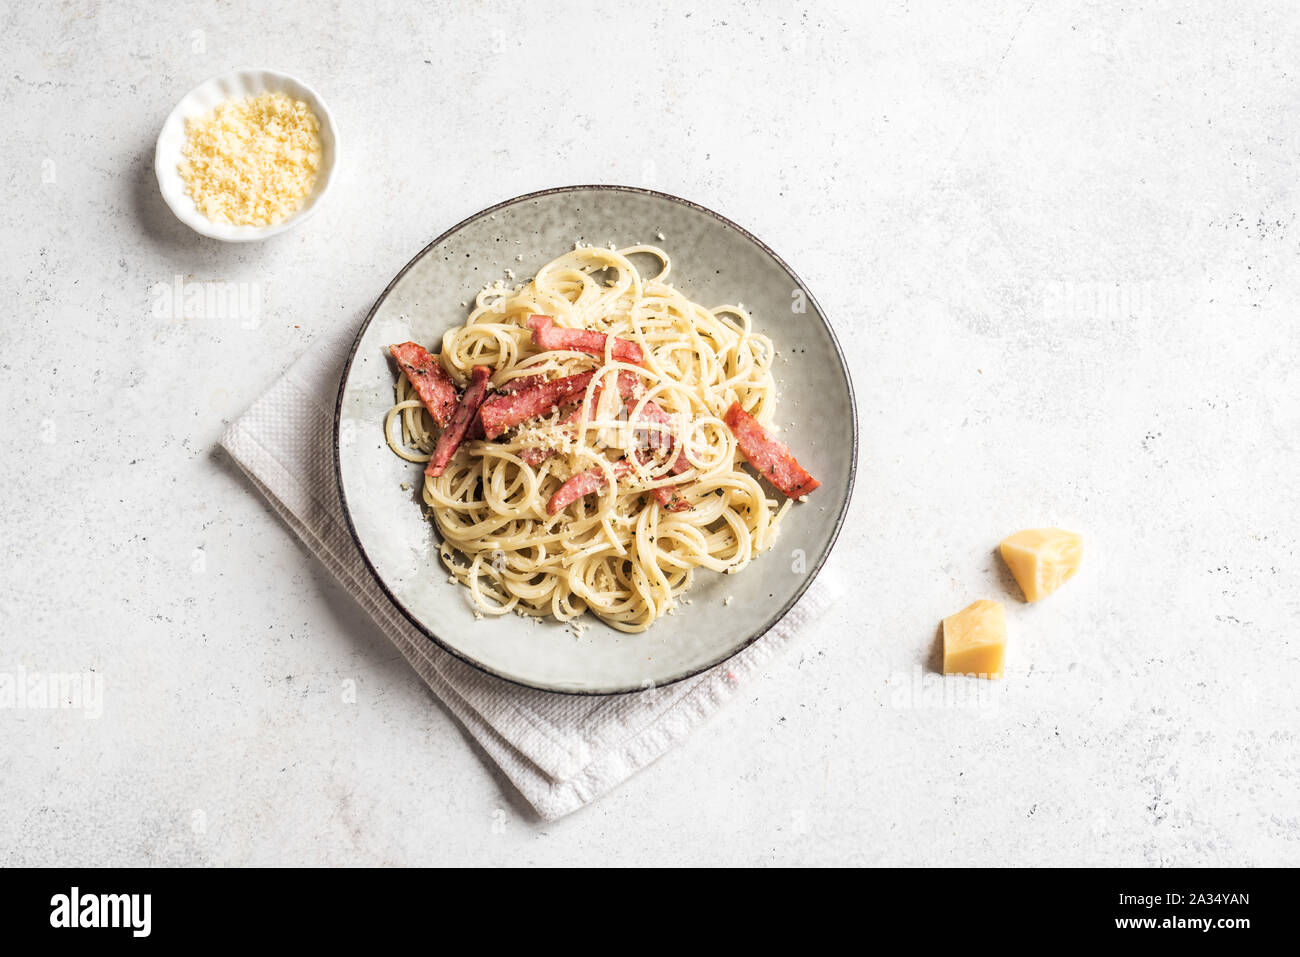 Les pâtes à la Carbonara, spaghetti avec bacon, oeufs durs, fromage parmesan et sauce à la crème. Cuisine italienne Pasta alla carbonara, vue du dessus, copiez l'espace. Banque D'Images